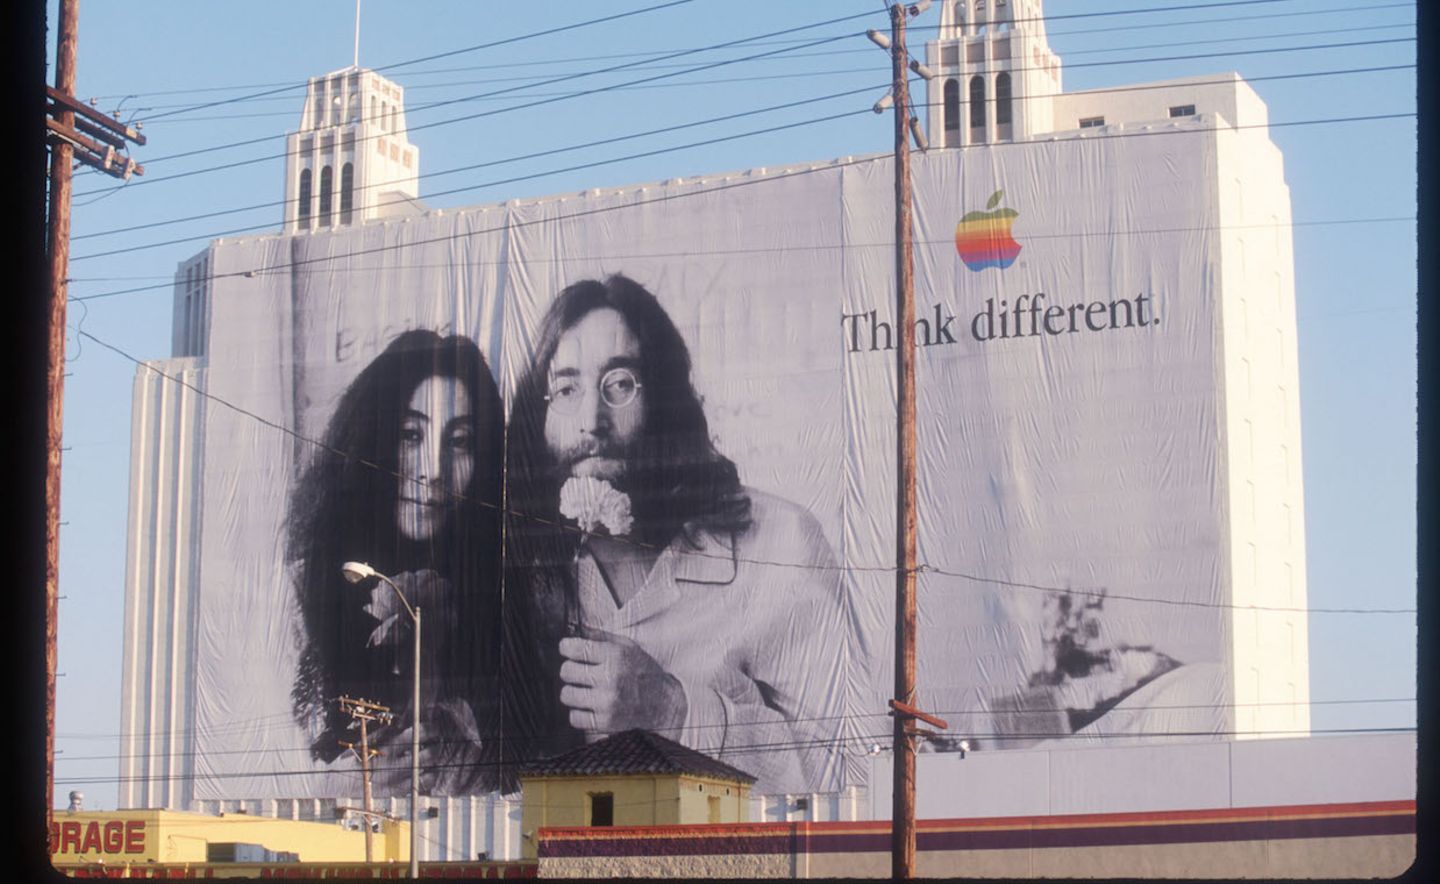 Menschen identifizieren sich mit Menschen stärken als mit Produkten. Apple hat das in seiner Kampagne "Think different" genutzt.